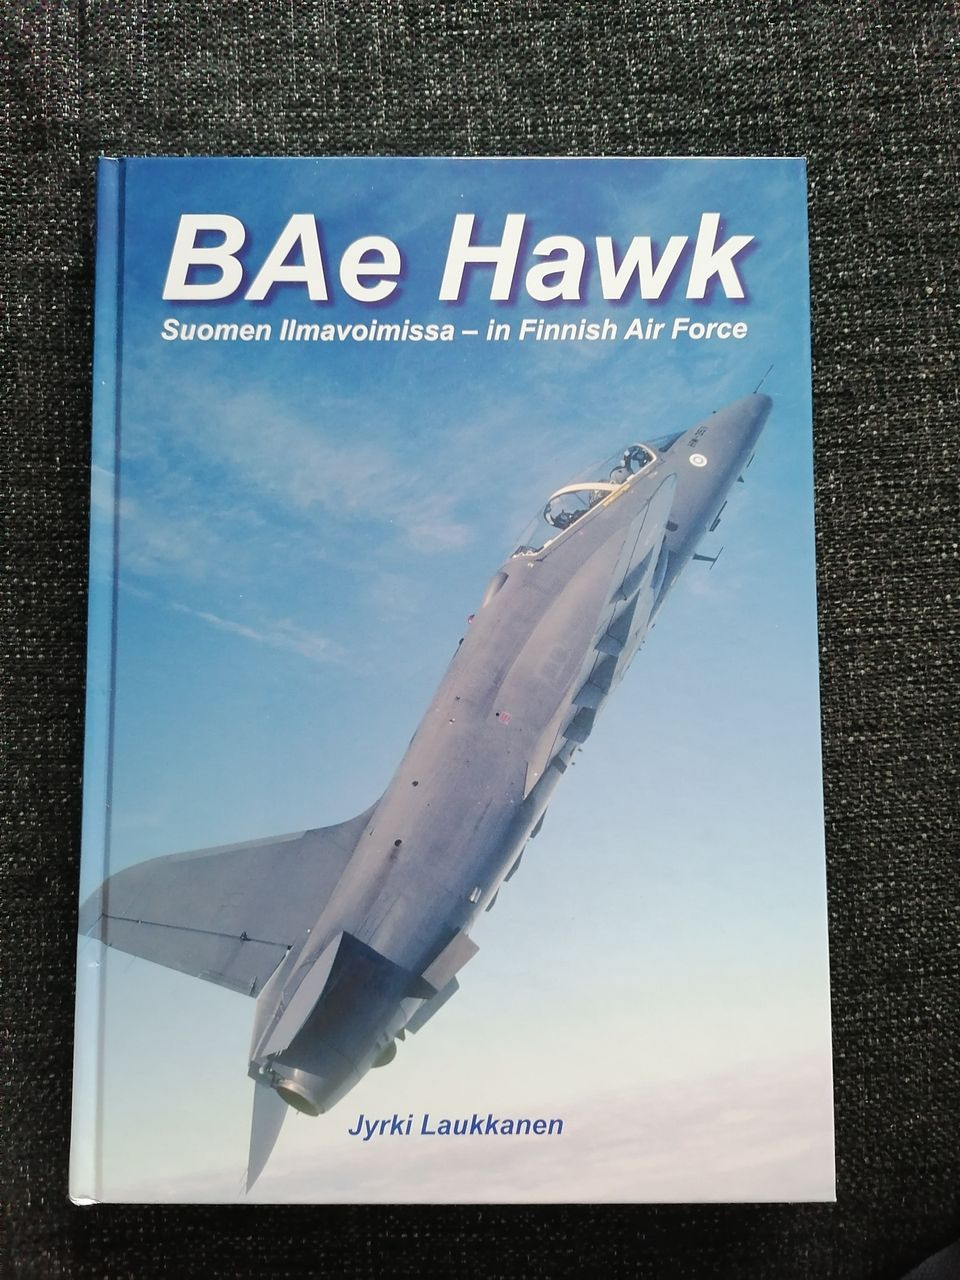 BAe hawk suomen ilmavoimissa.